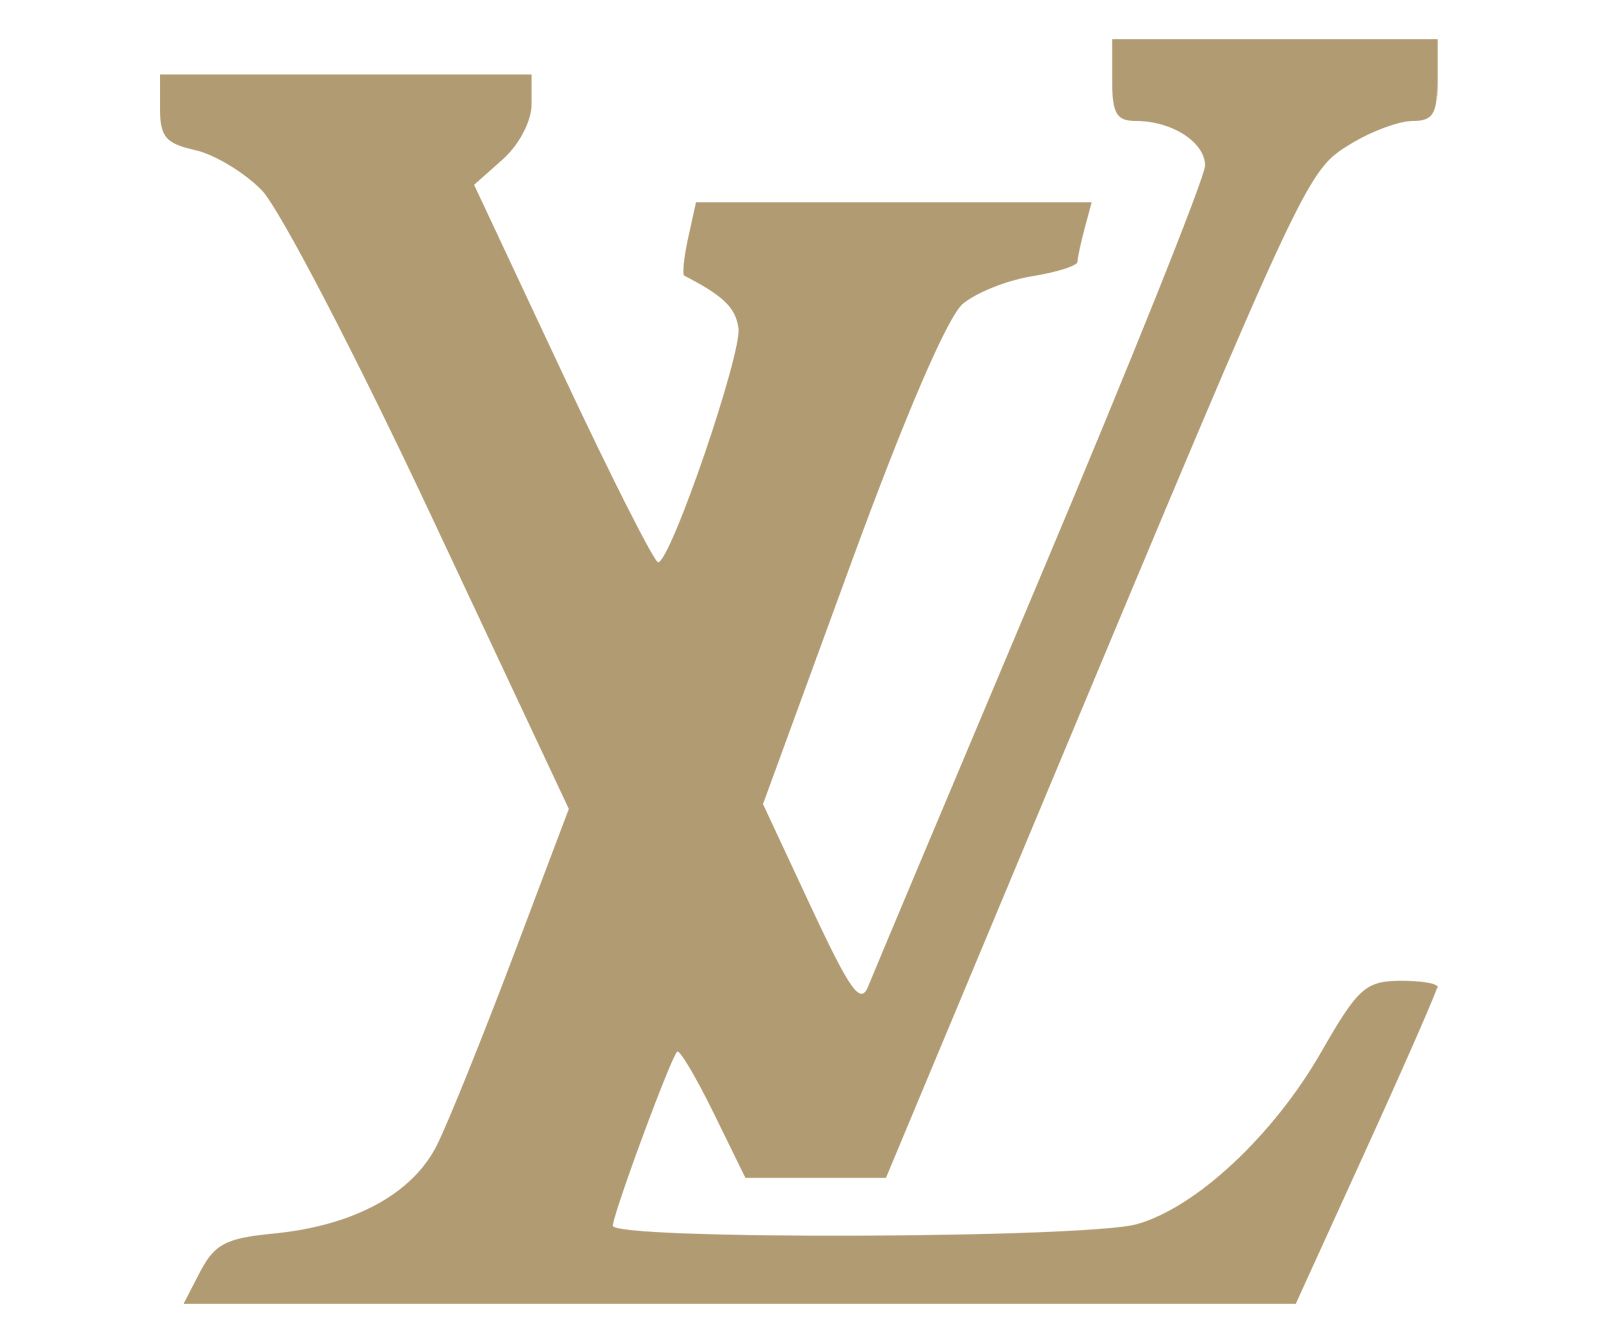 Louis Vuitton Logo Png Downlo